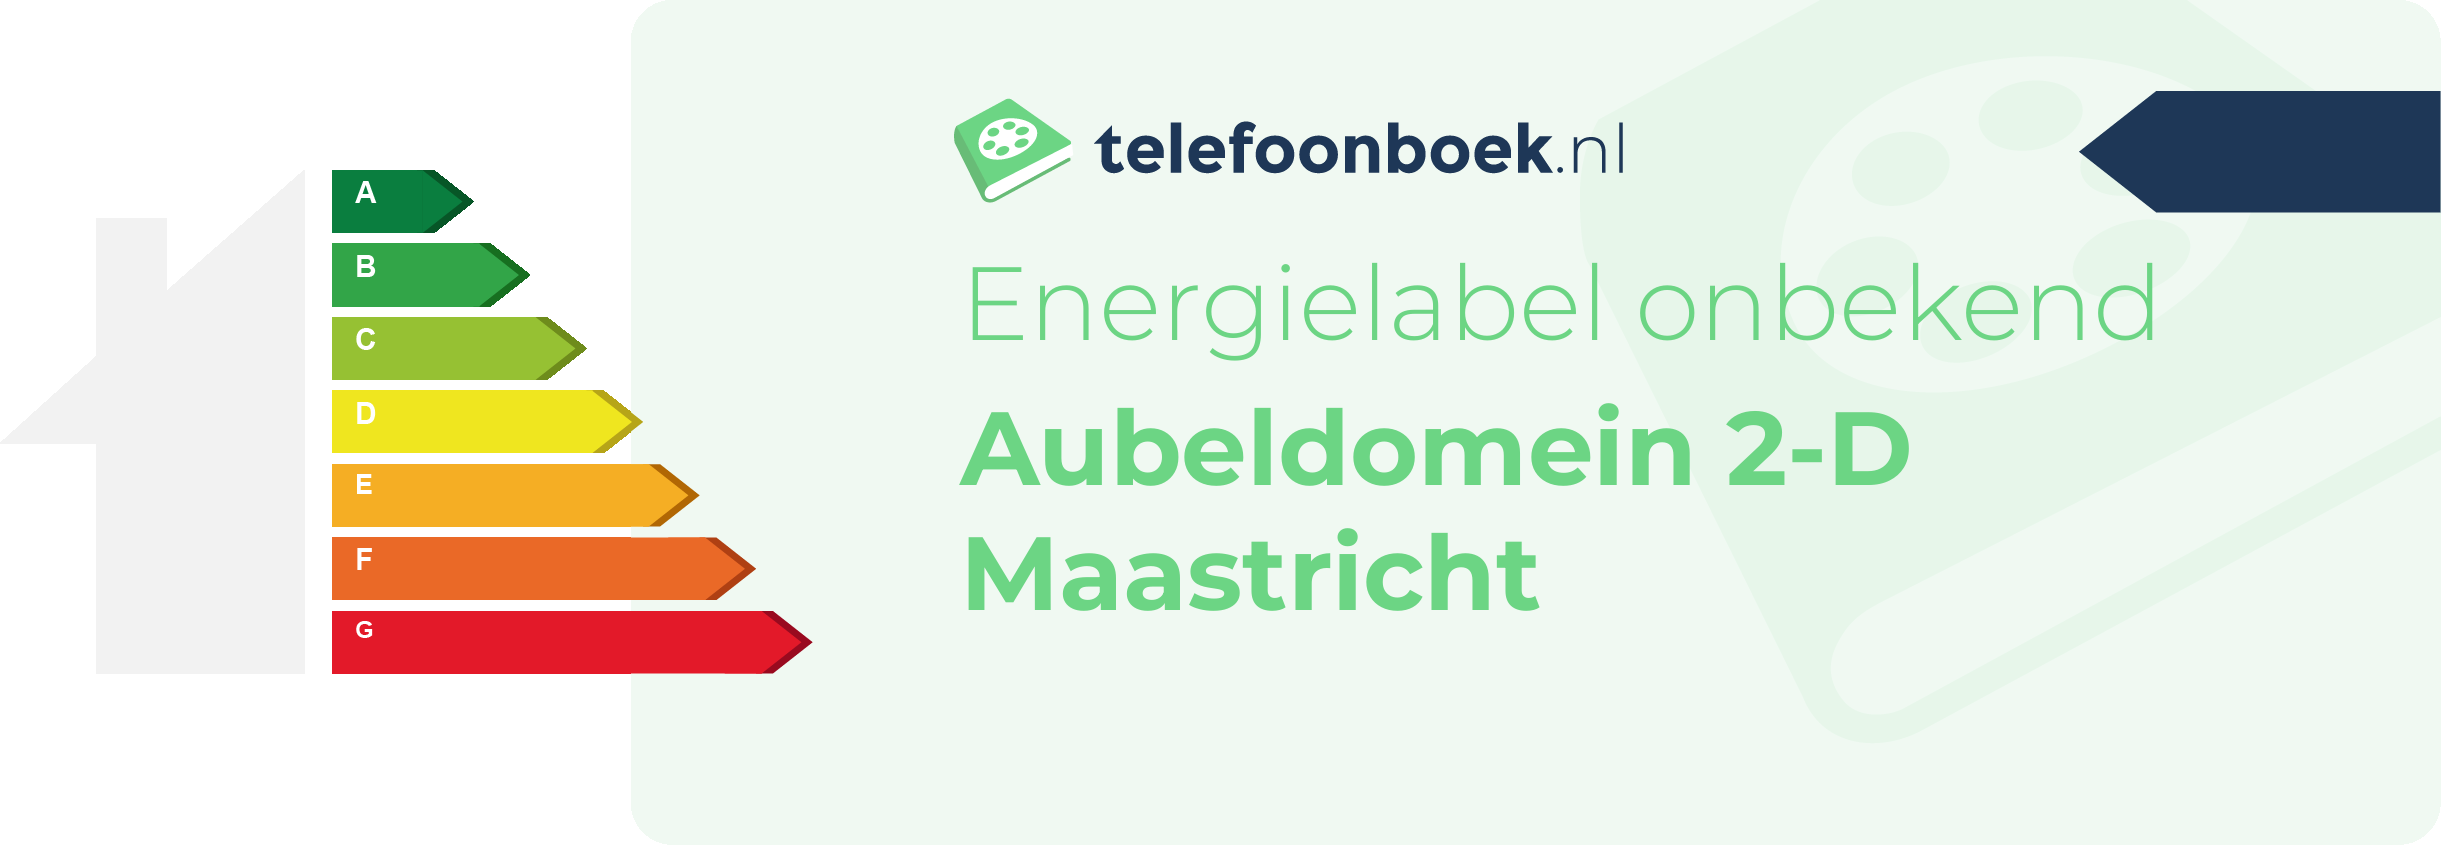 Energielabel Aubeldomein 2-D Maastricht